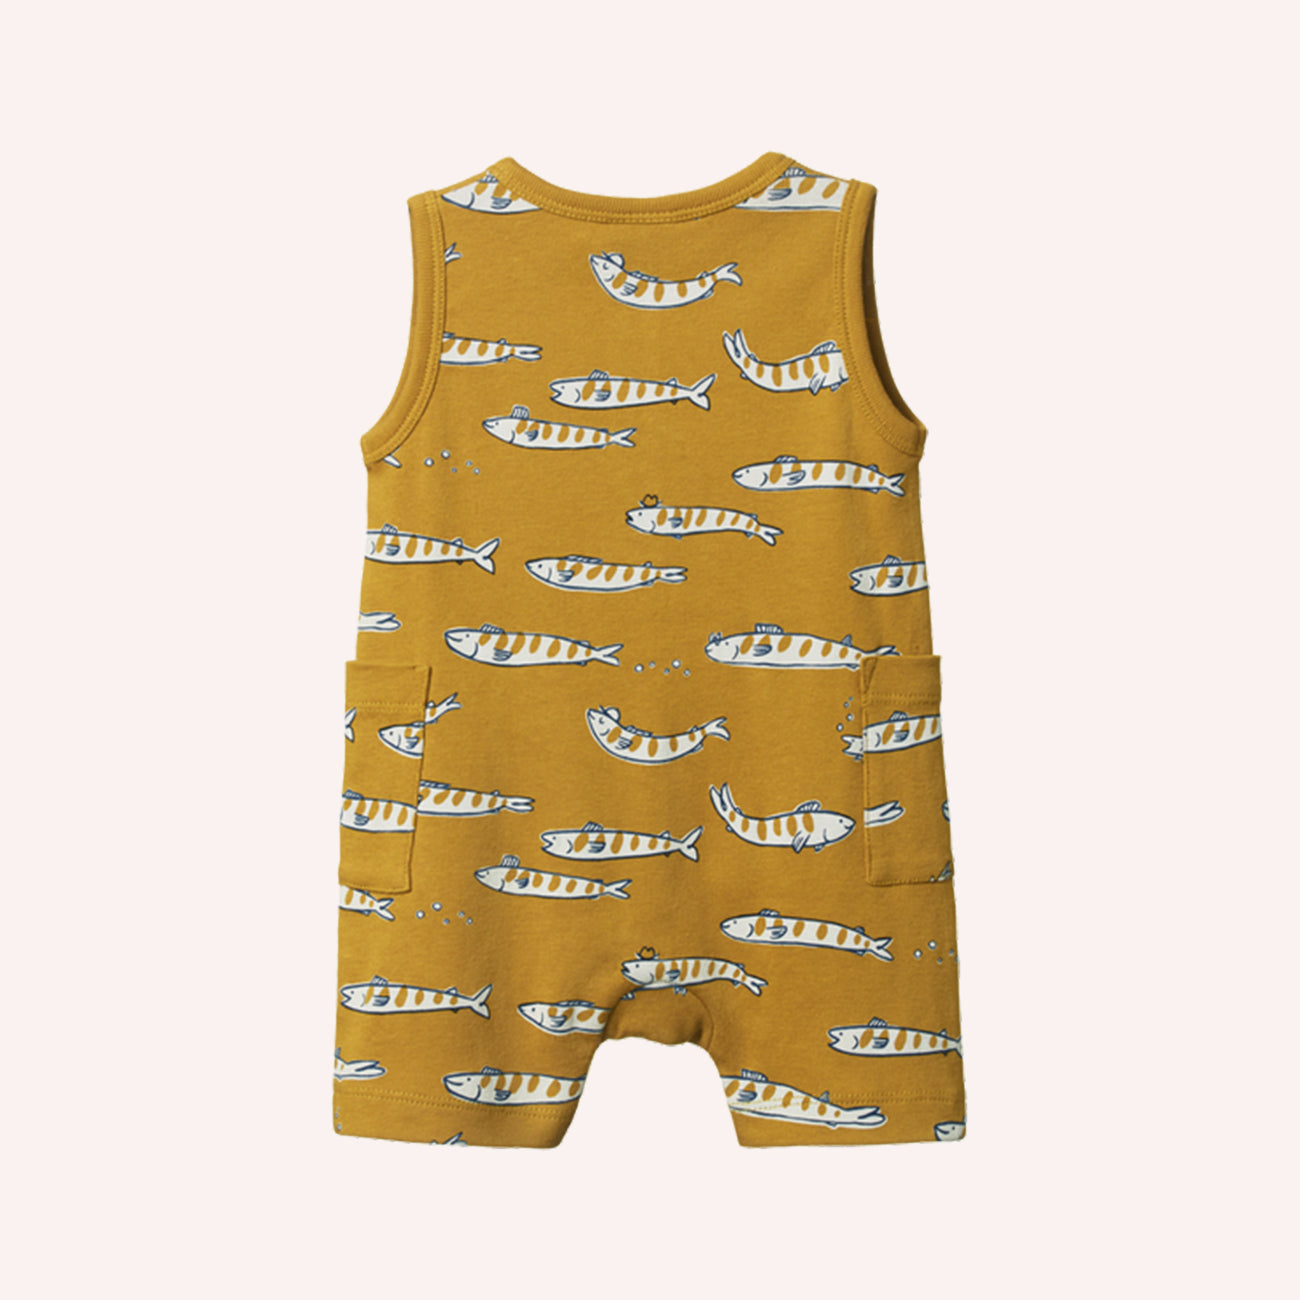 Camper Suit - South Seas Palm Print